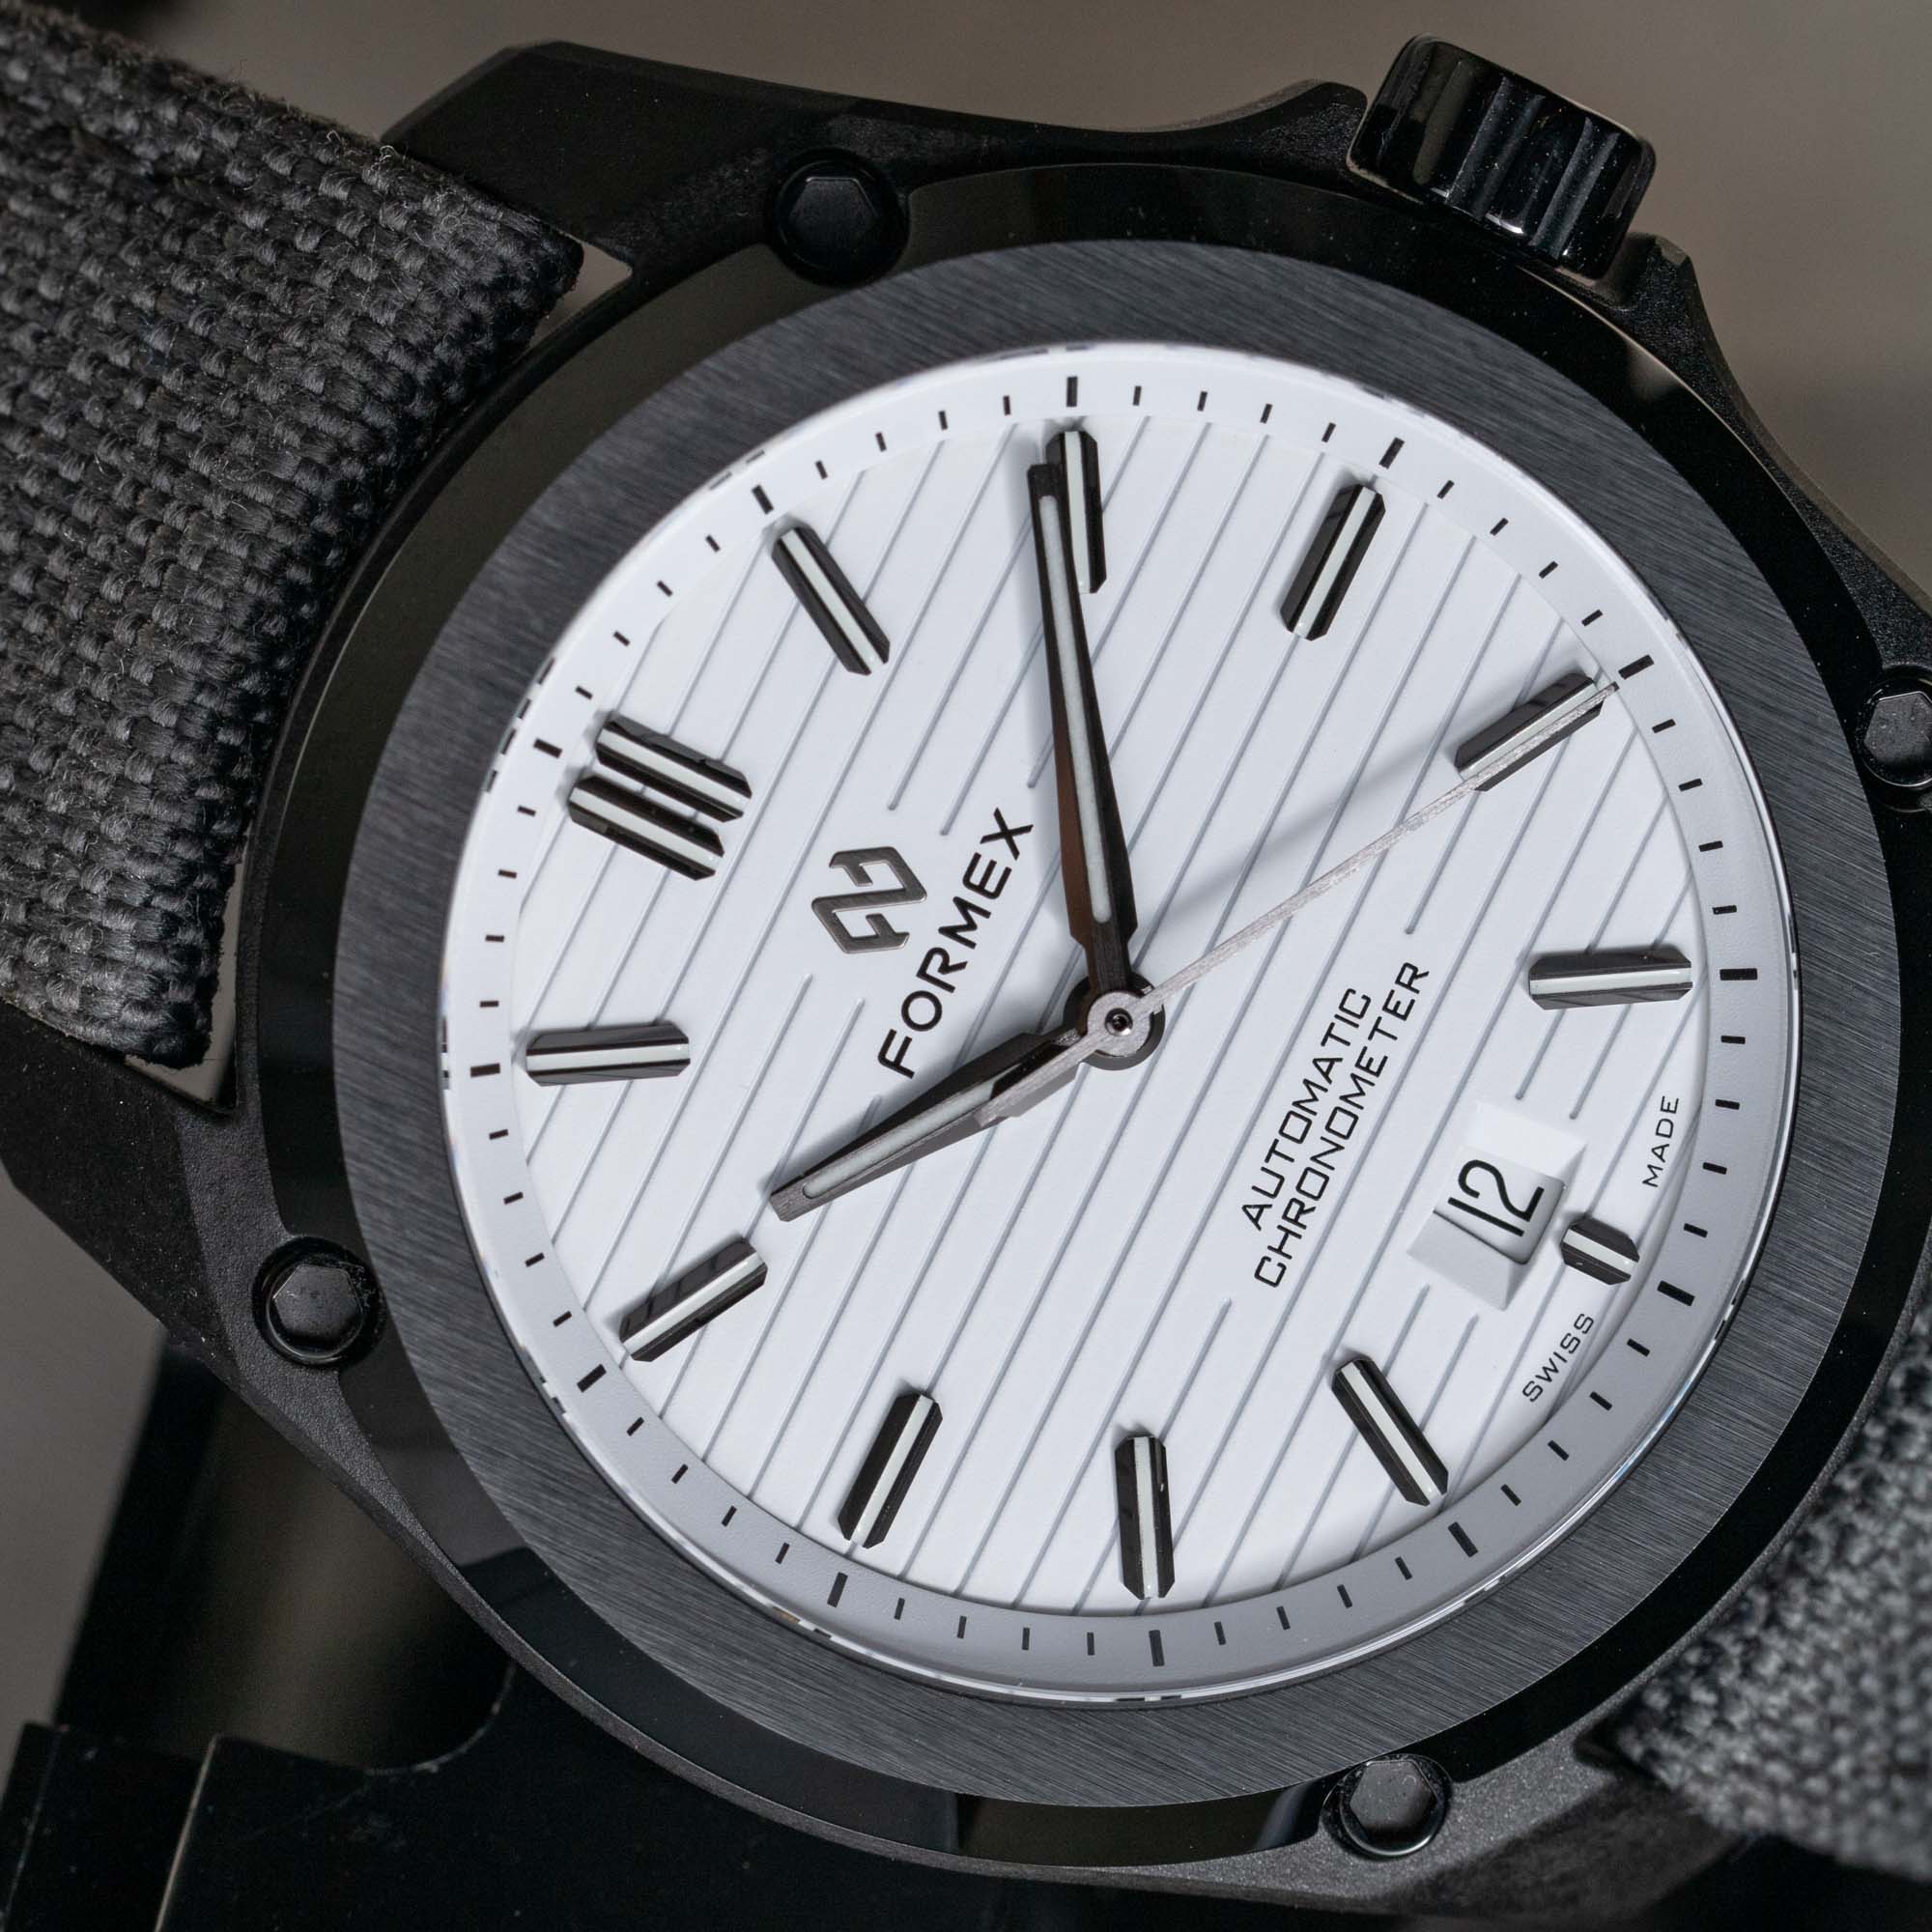 Обзор часов Formex Essence Leggera FortyOne из карбона и керамики диаметром 41 мм